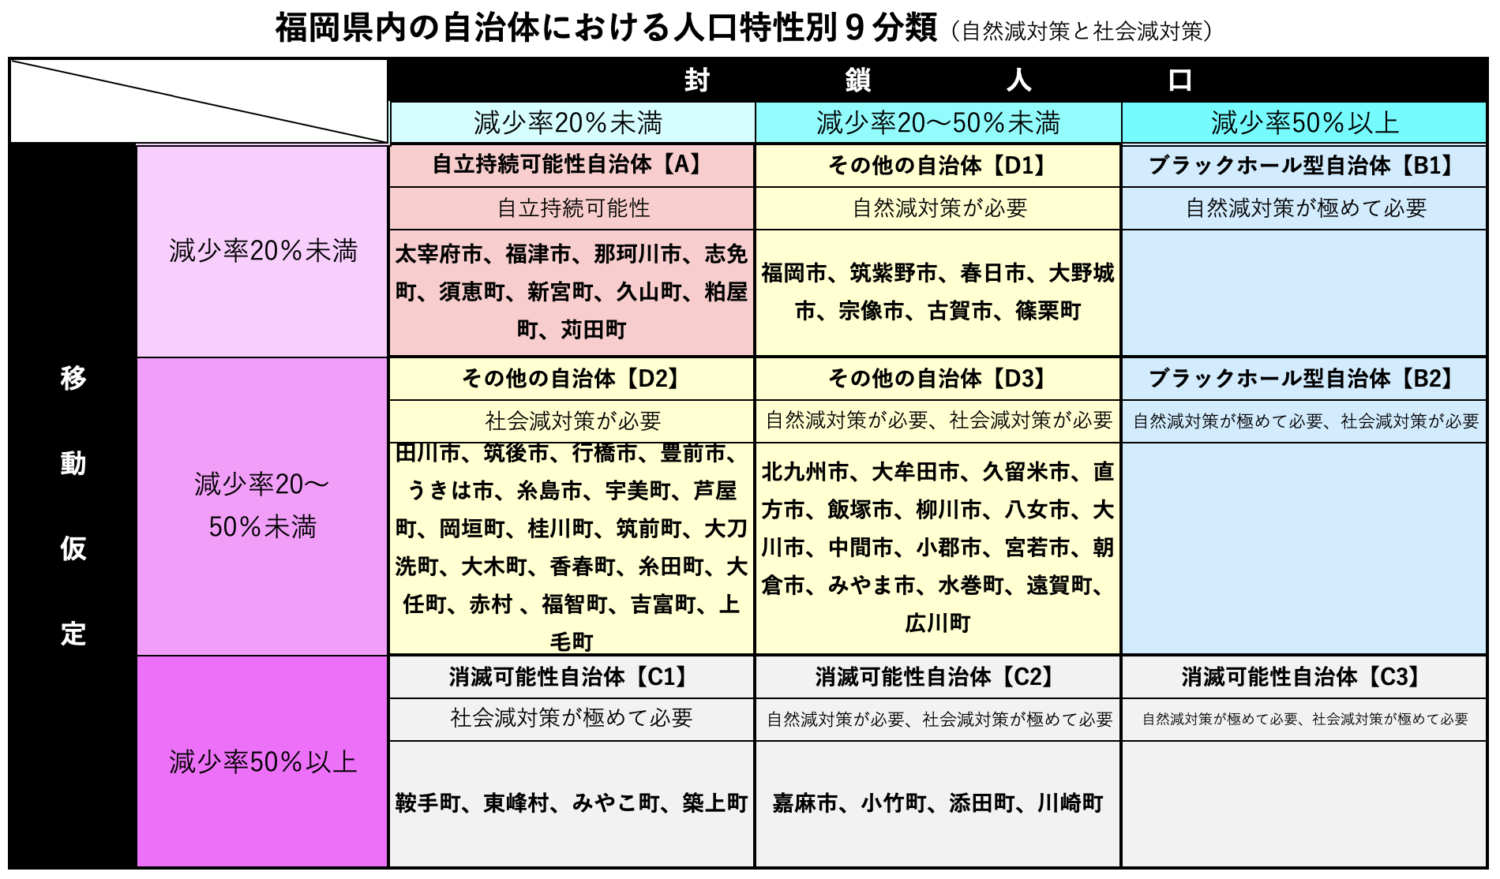 福岡県内の自治体における人口特性別９分類